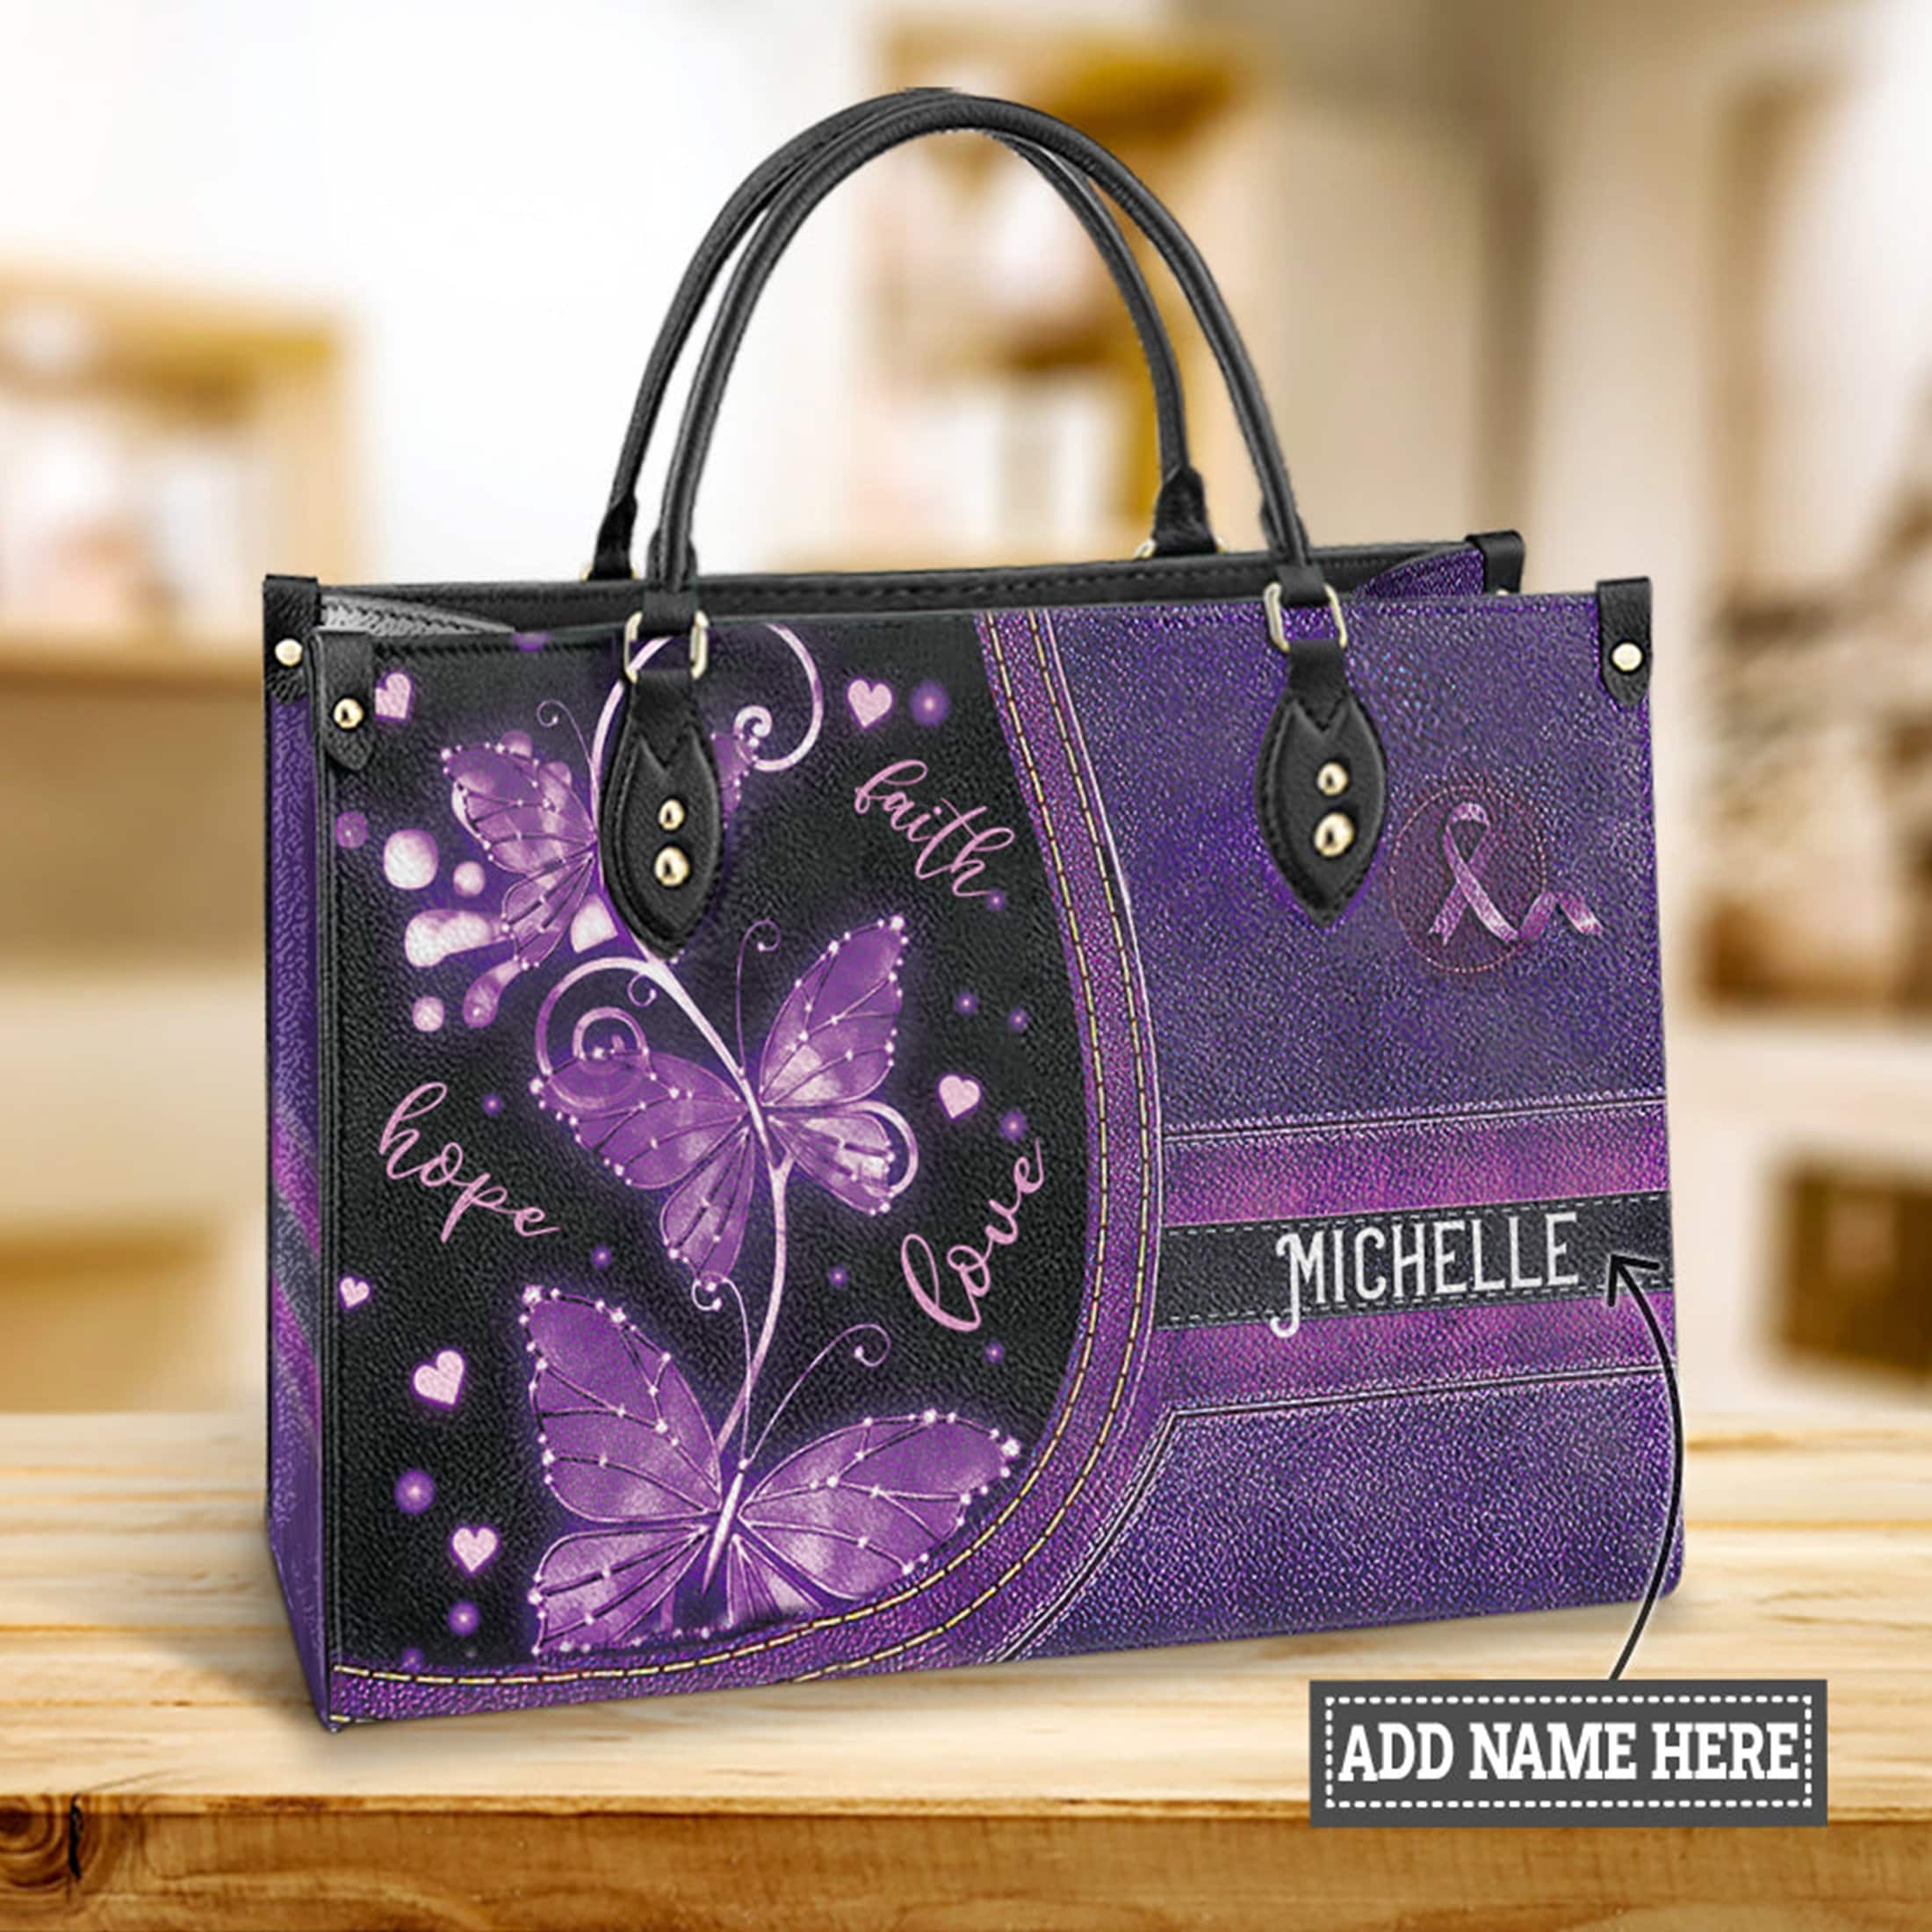 COACH PURPLE VIOLET CHRISTIE SATCHEL BAG PURSE | Purple bags, Bags, Women  handbags